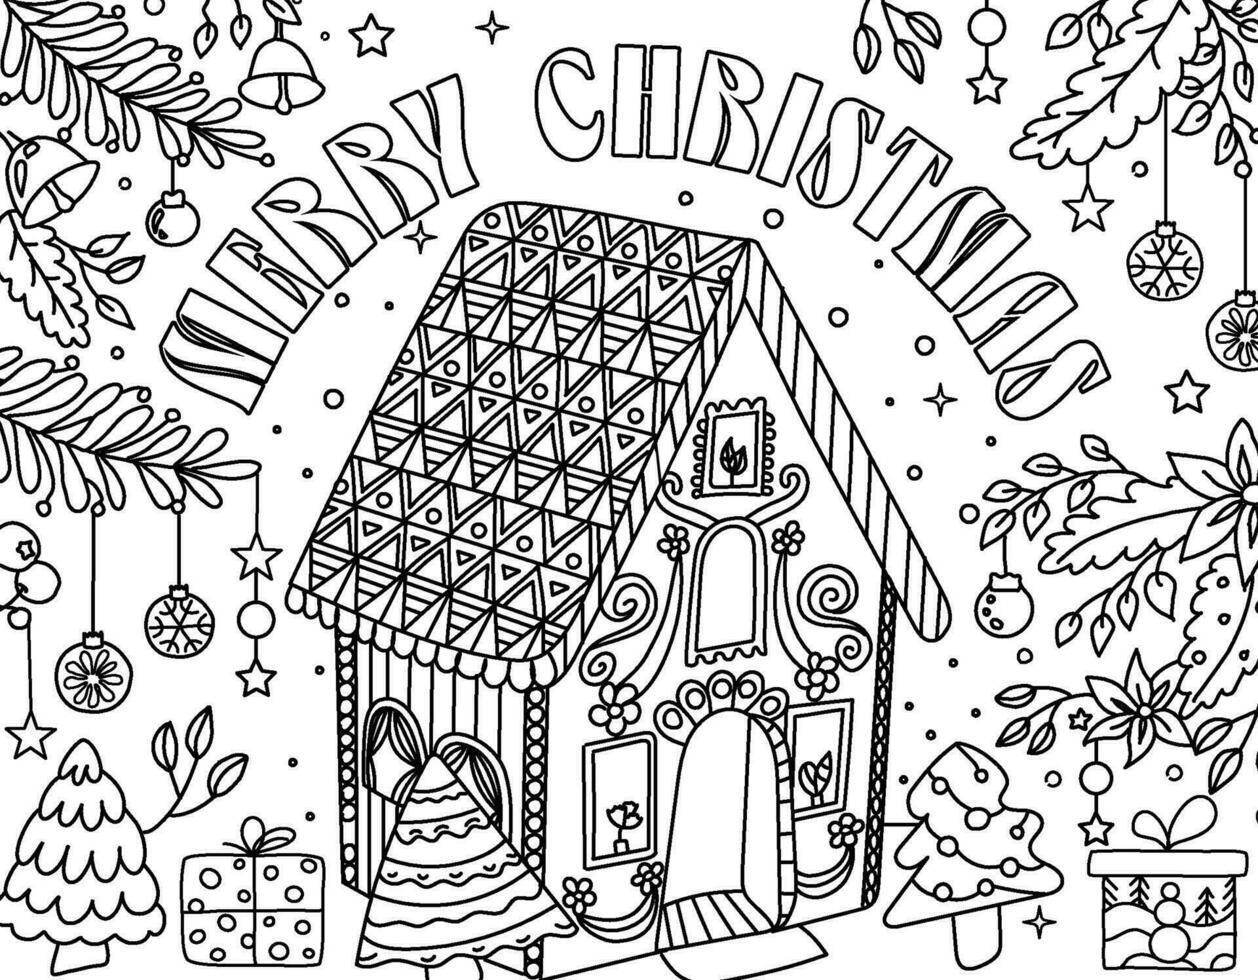 Libro de actividades navideñas para colorear para niños menores de 3 años  14291711 Vector en Vecteezy